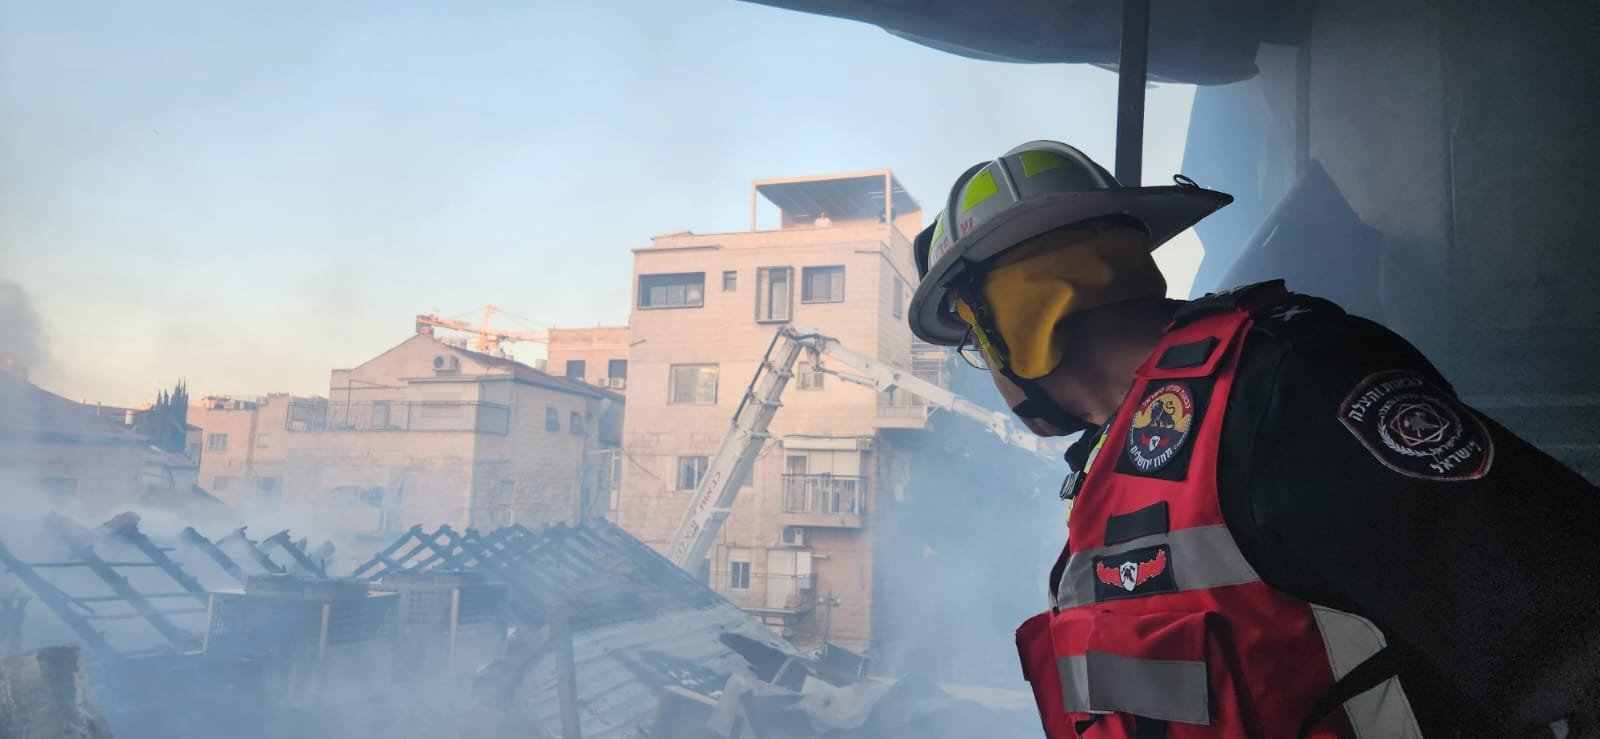 القدس:حريق في معهد ديني وكنيس وتخليص عالقين.-11